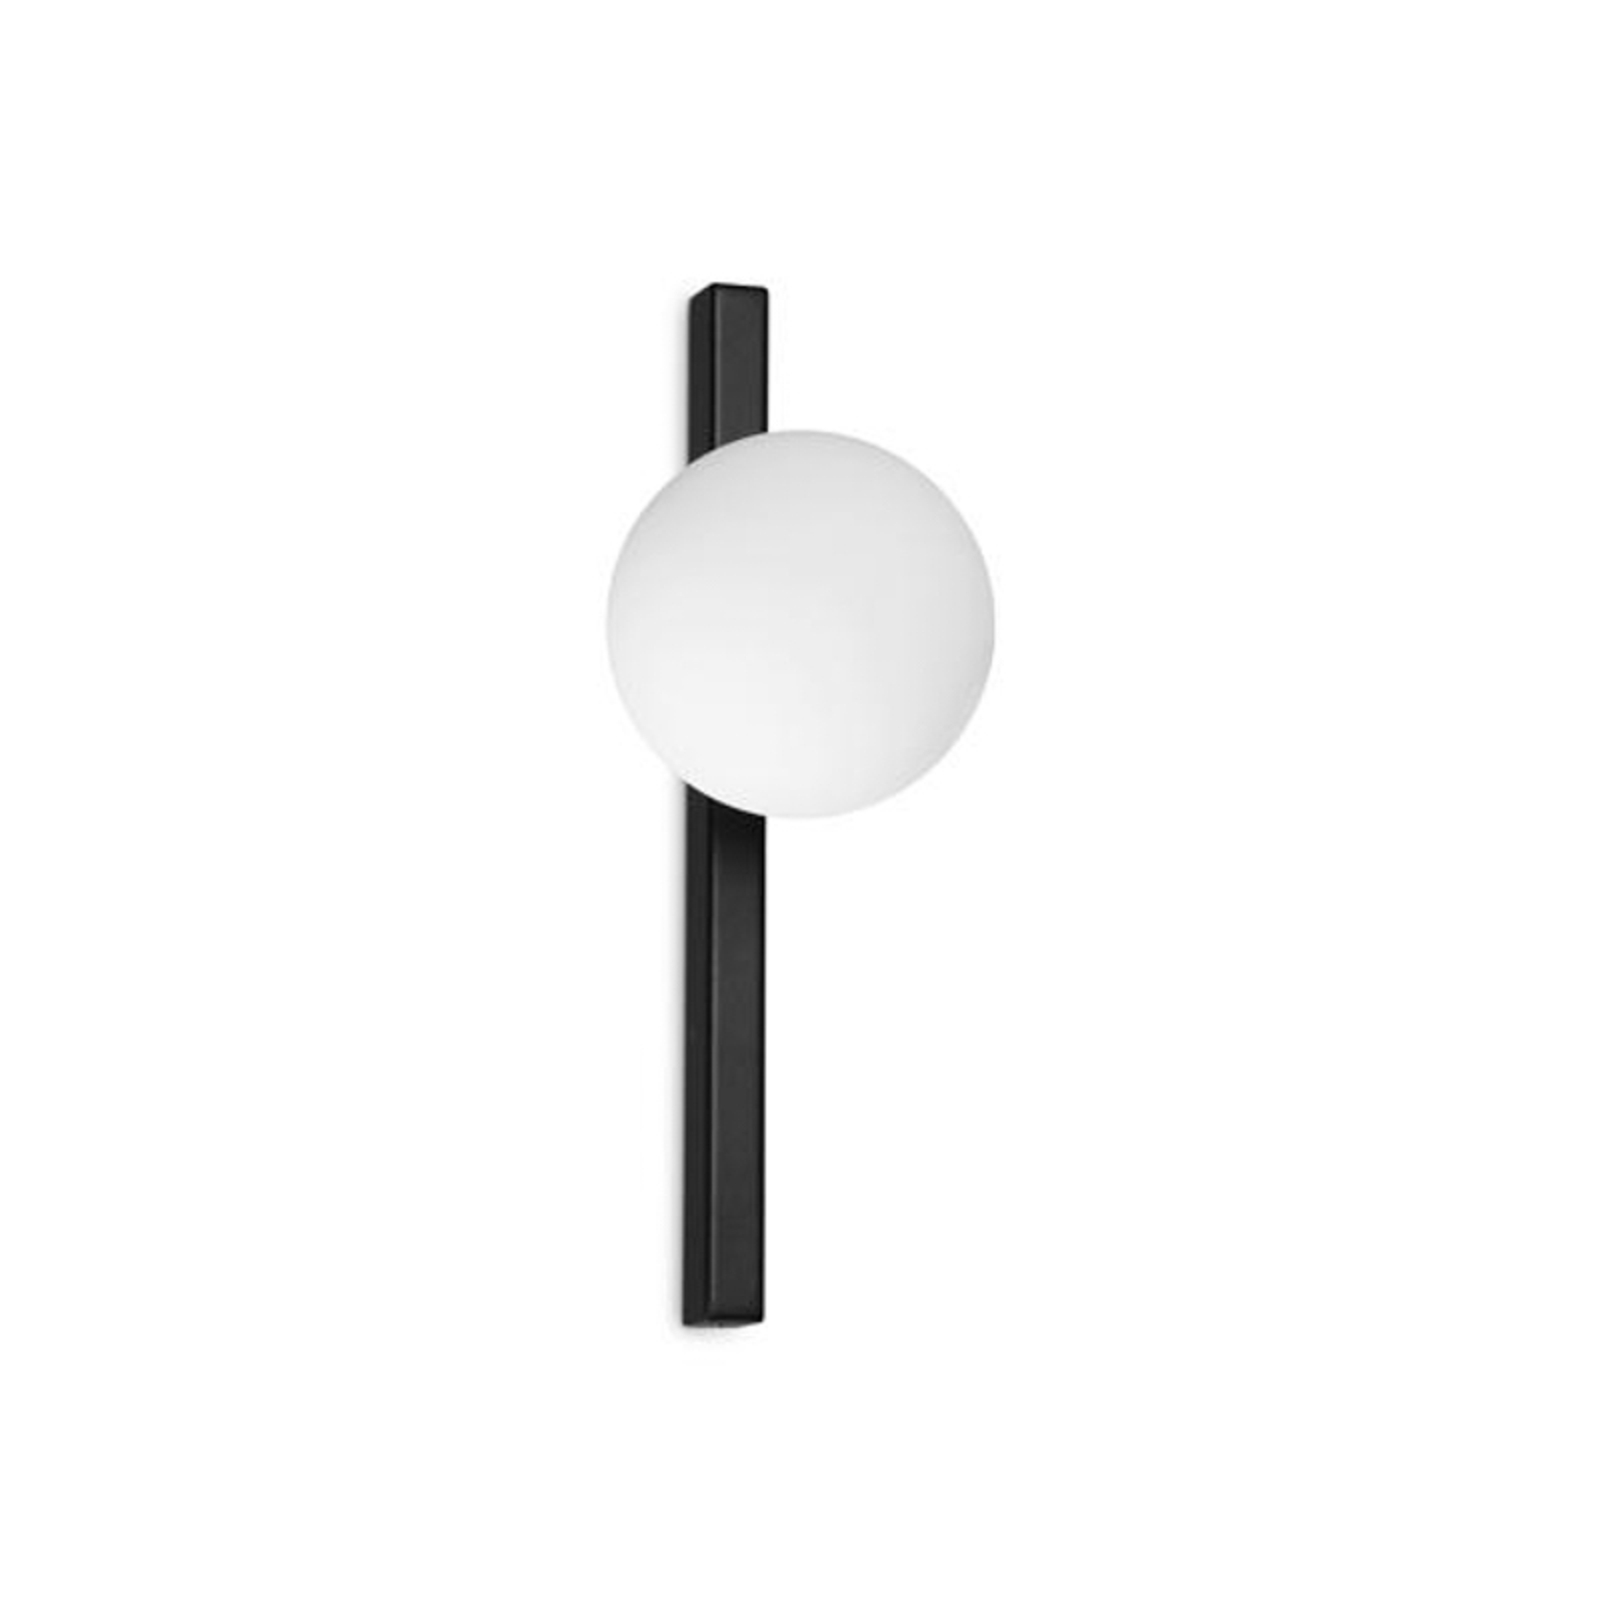 Wandlamp Ideal Lux Binomio zwart, 1-lamp, metaal, glas